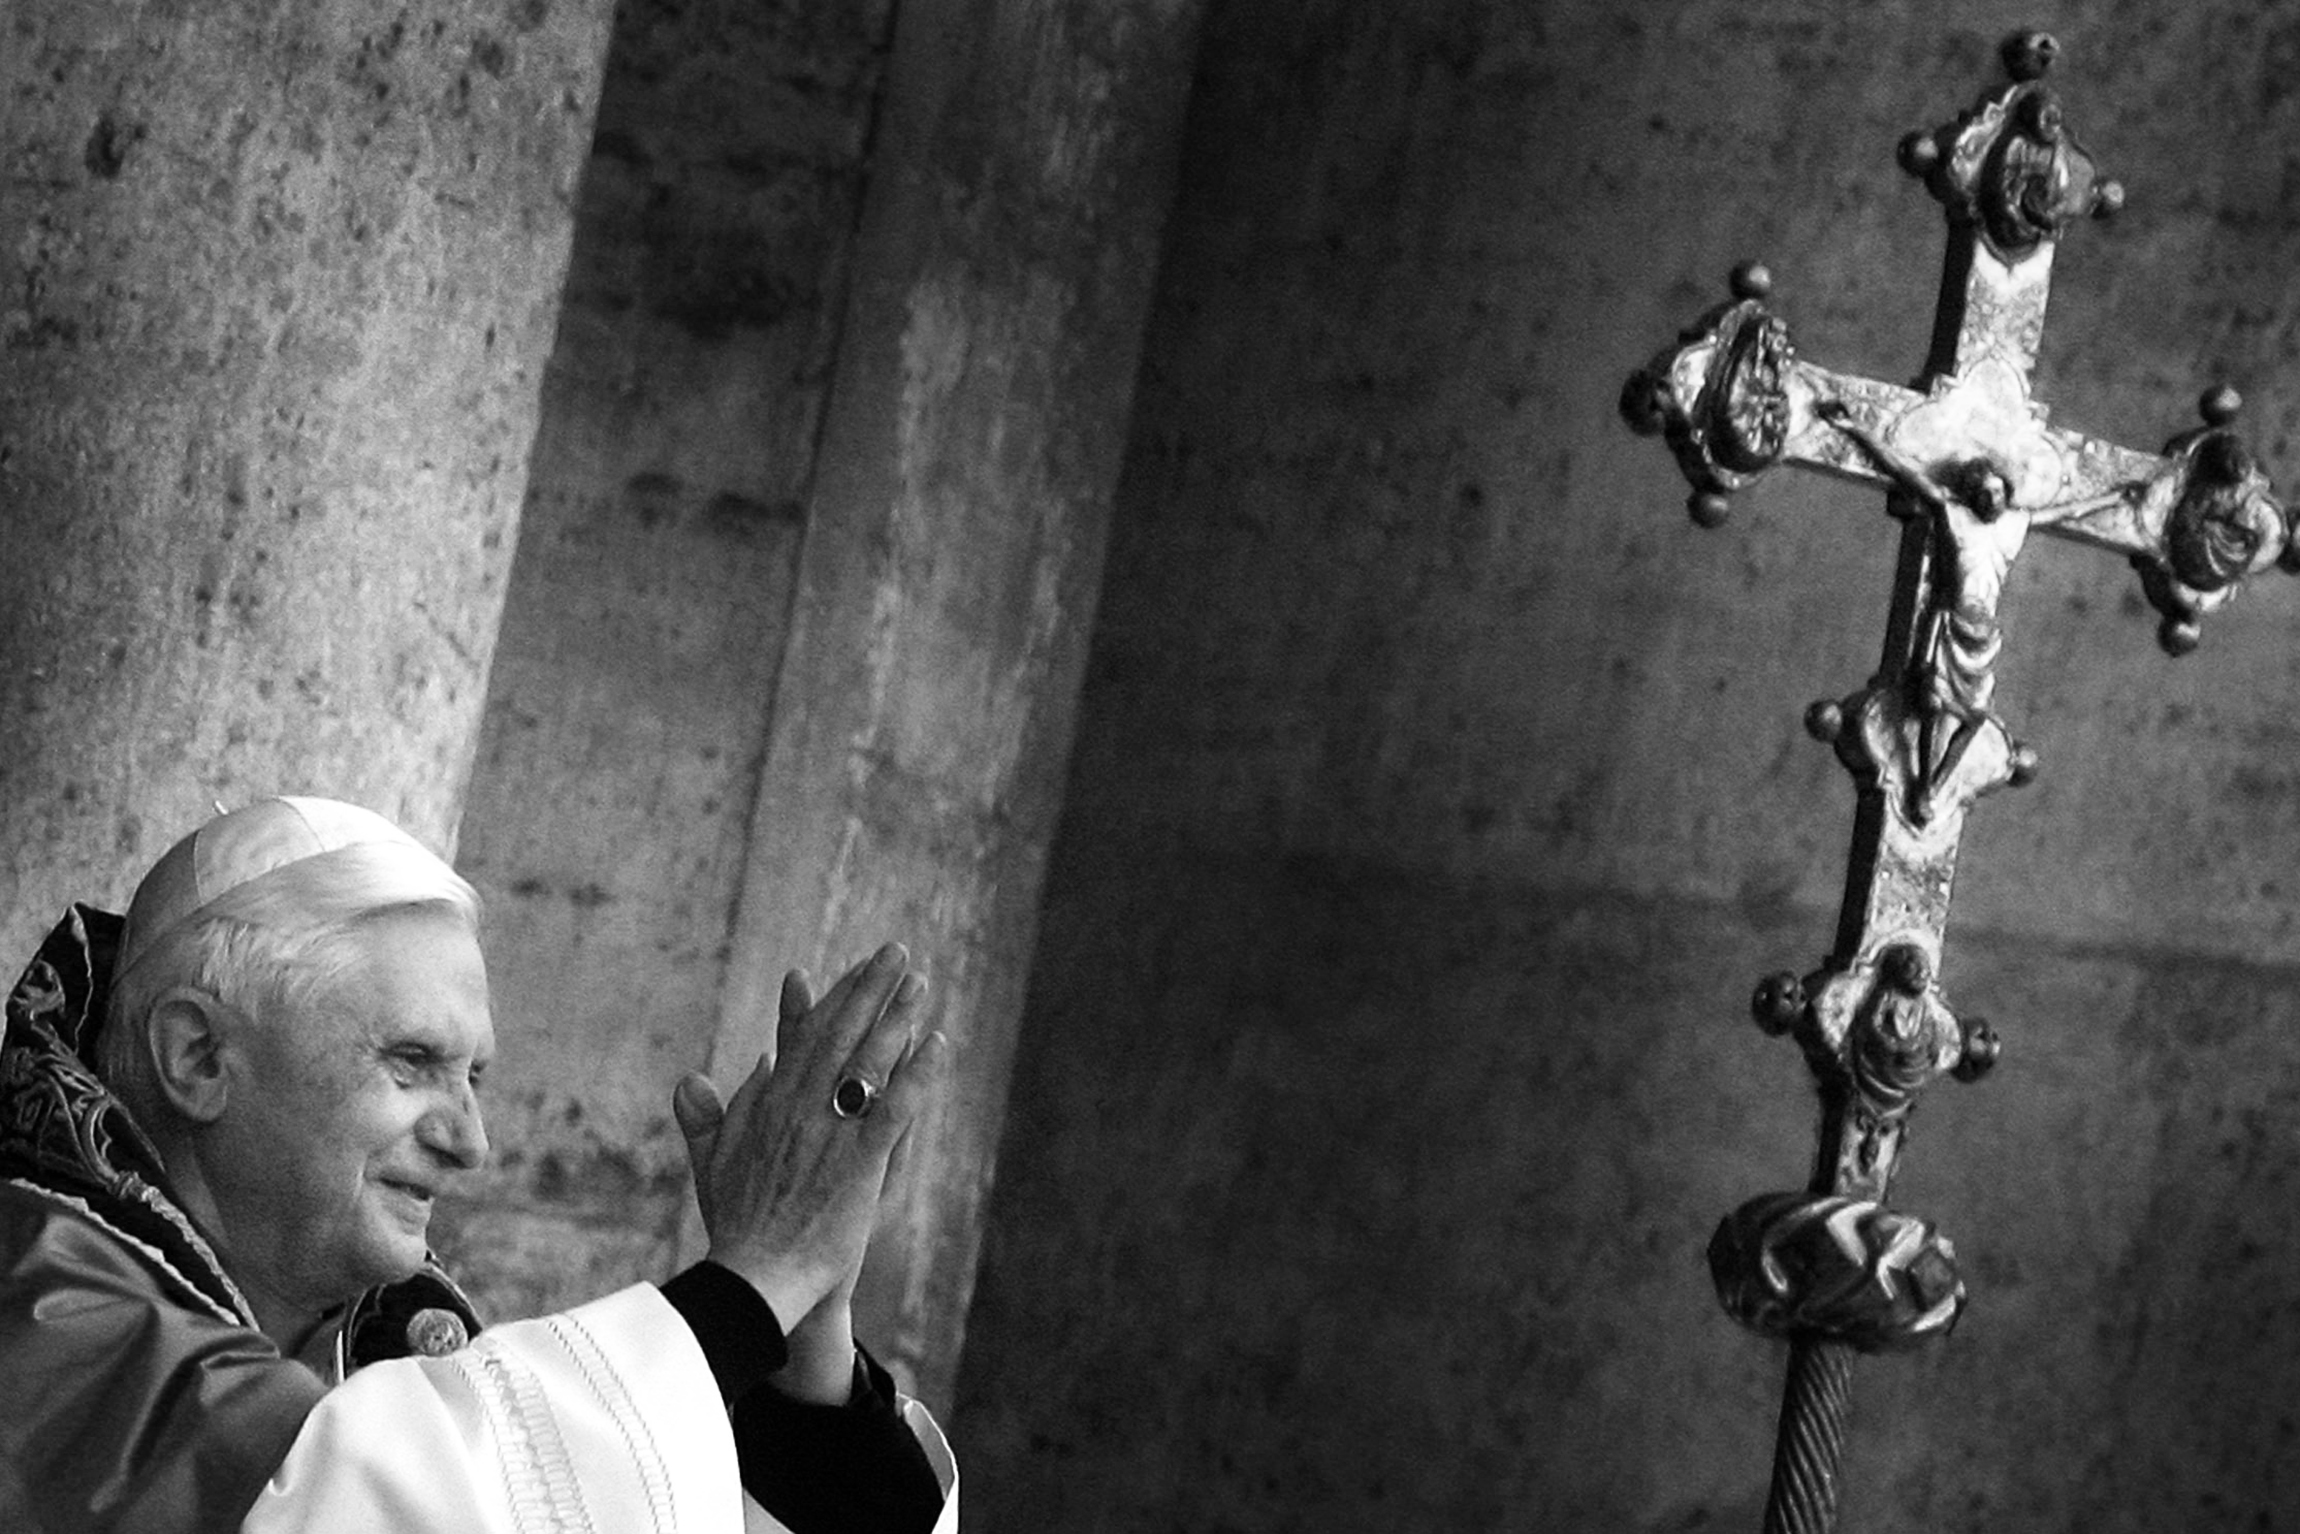 Будущий папа римский Йозеф Ратцингер родился в 1927 году в Баварии. Учился в классической гимназии и семинарии. В 1944 году его призвали в немецкий Австрийский легион и направили на обучение. В 1945-м он дезертировал, после некоторое время провел в лагере военнопленных. По возвращении домой снова поступил в семинарию. В 1951 году был рукоположен в сан священника. В 1953 году получил в Мюнхенском университете степень доктора богословия.

В 1977 году он стал архиепископом Мюнхенским и Фрайзингским, в том&nbsp;же году папа Павел VI возвел его в кардинальский сан. В 1981 году Ратцингер переехал в Ватикан&nbsp;&mdash; став префектом Конгрегации по делам вероучения.

Папский престол он занял в 2005 году, взяв имя Бенедикт XVI. На своем посту он был противником радикальных реформ в церкви. В 2013 году решил уйти по состоянию здоровья, став первым за 600 лет папой, добровольно отказавшимся от полномочий. После этого его официальный титул назывался &laquo;папа римский на покое&raquo;.

Бенедикт XVI умер 31 декабря 2022 года. Ему было 95 лет.